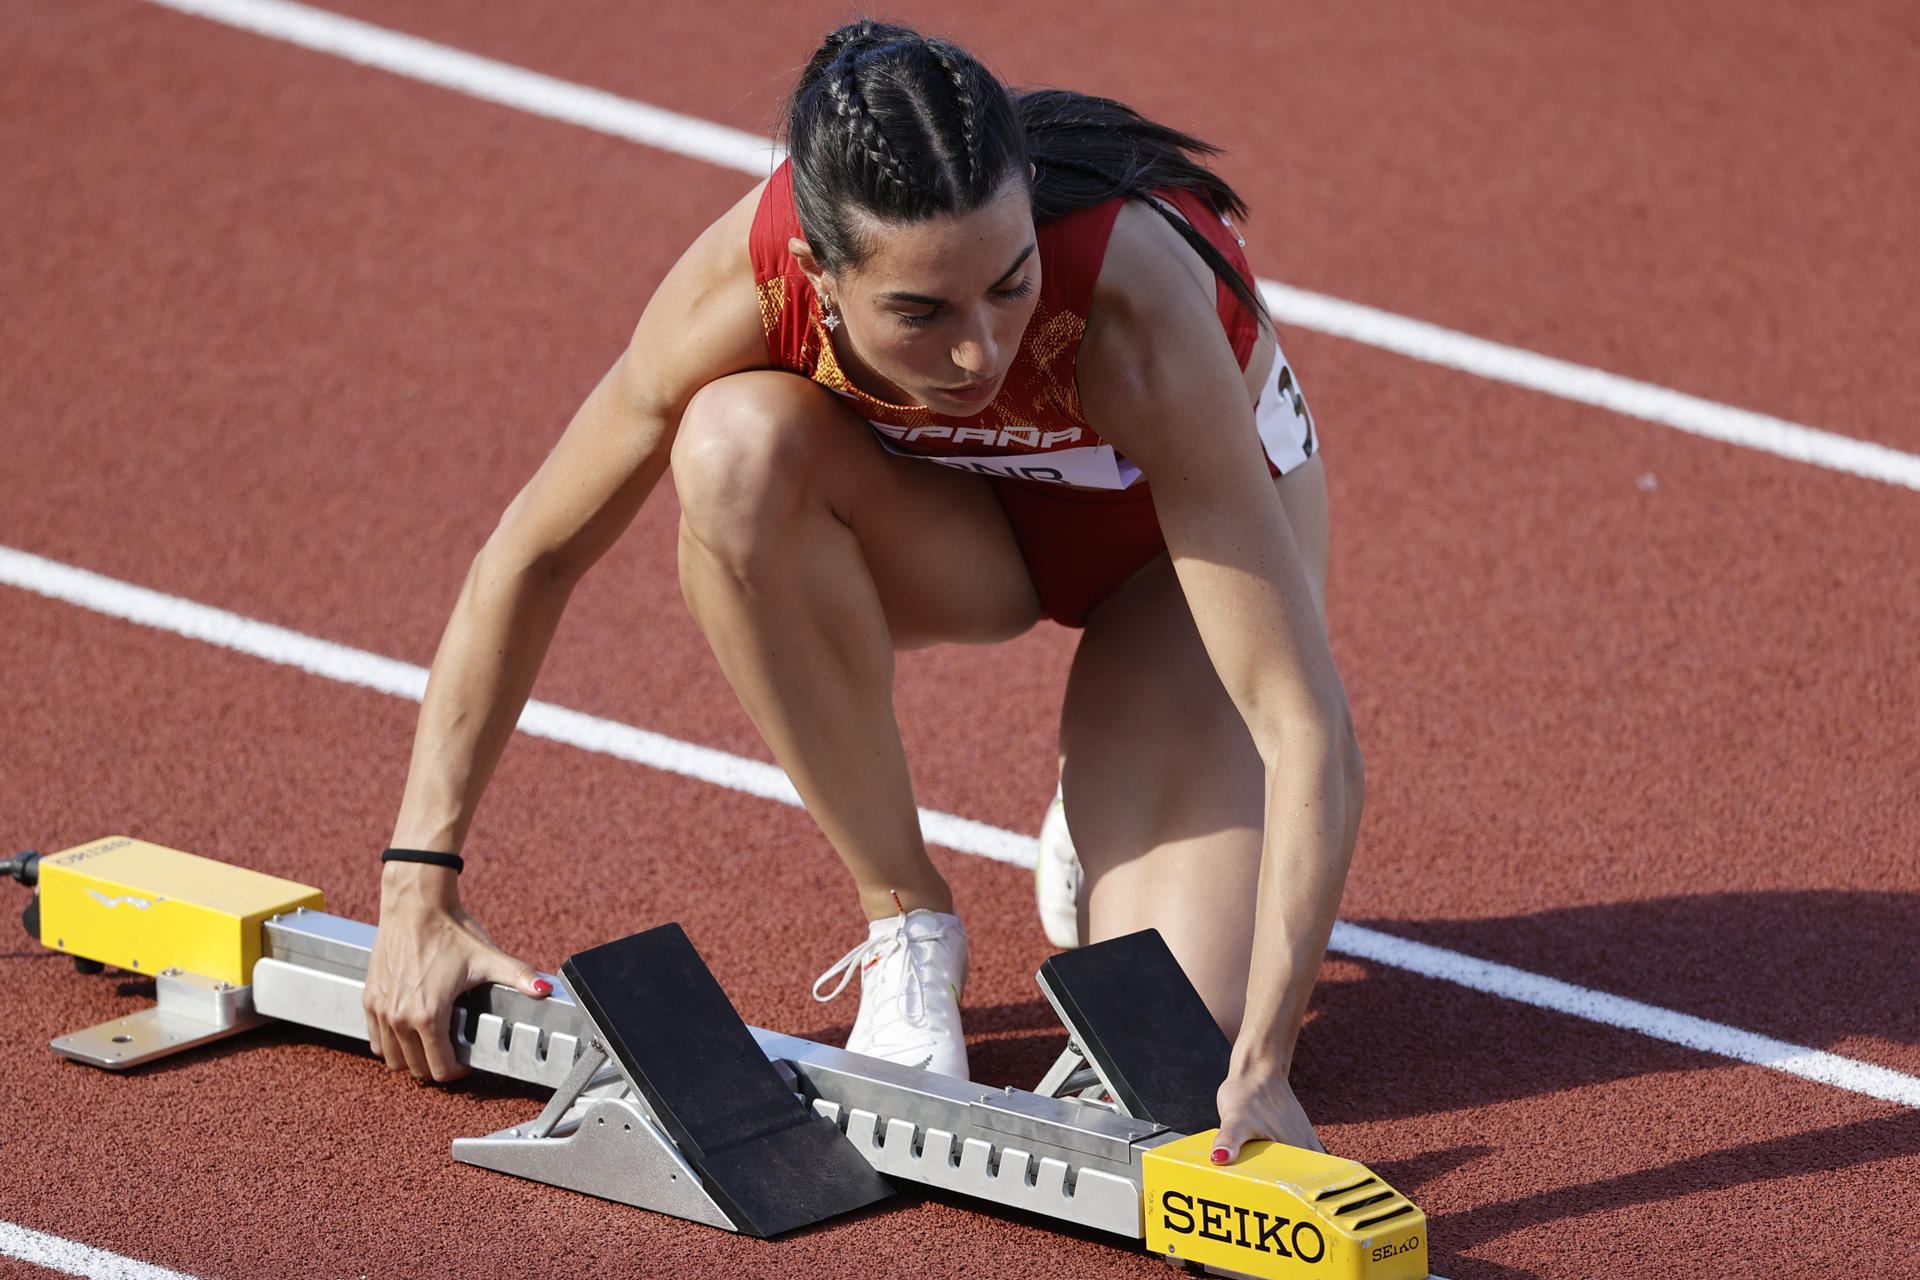 Fotografía de archivo en la que se registró a la atleta española Eva Santidrián, integrante del equipo femenino de su país en la prueba de relevos 4x400m. EFE/Kai Forsterling